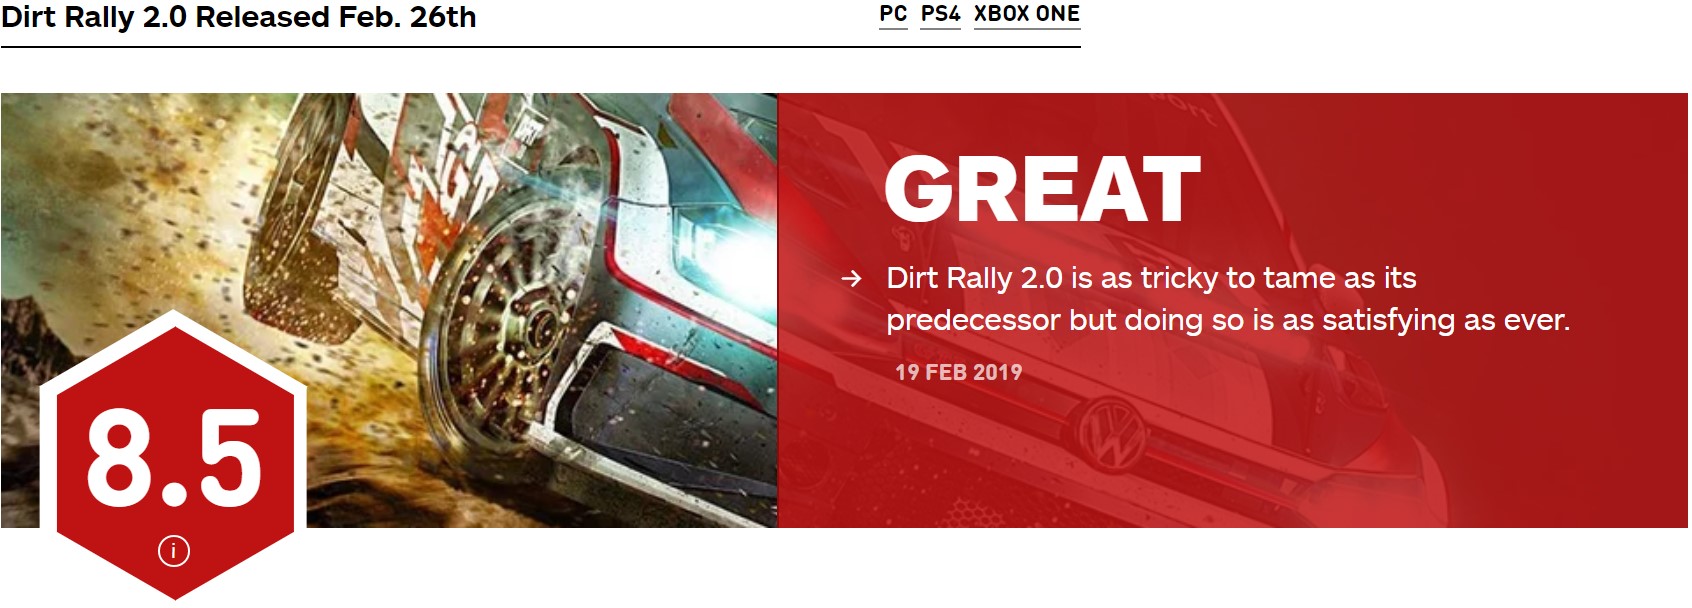 《尘埃拉力赛2.0》媒体评分解禁 获IGN 8.5分好评